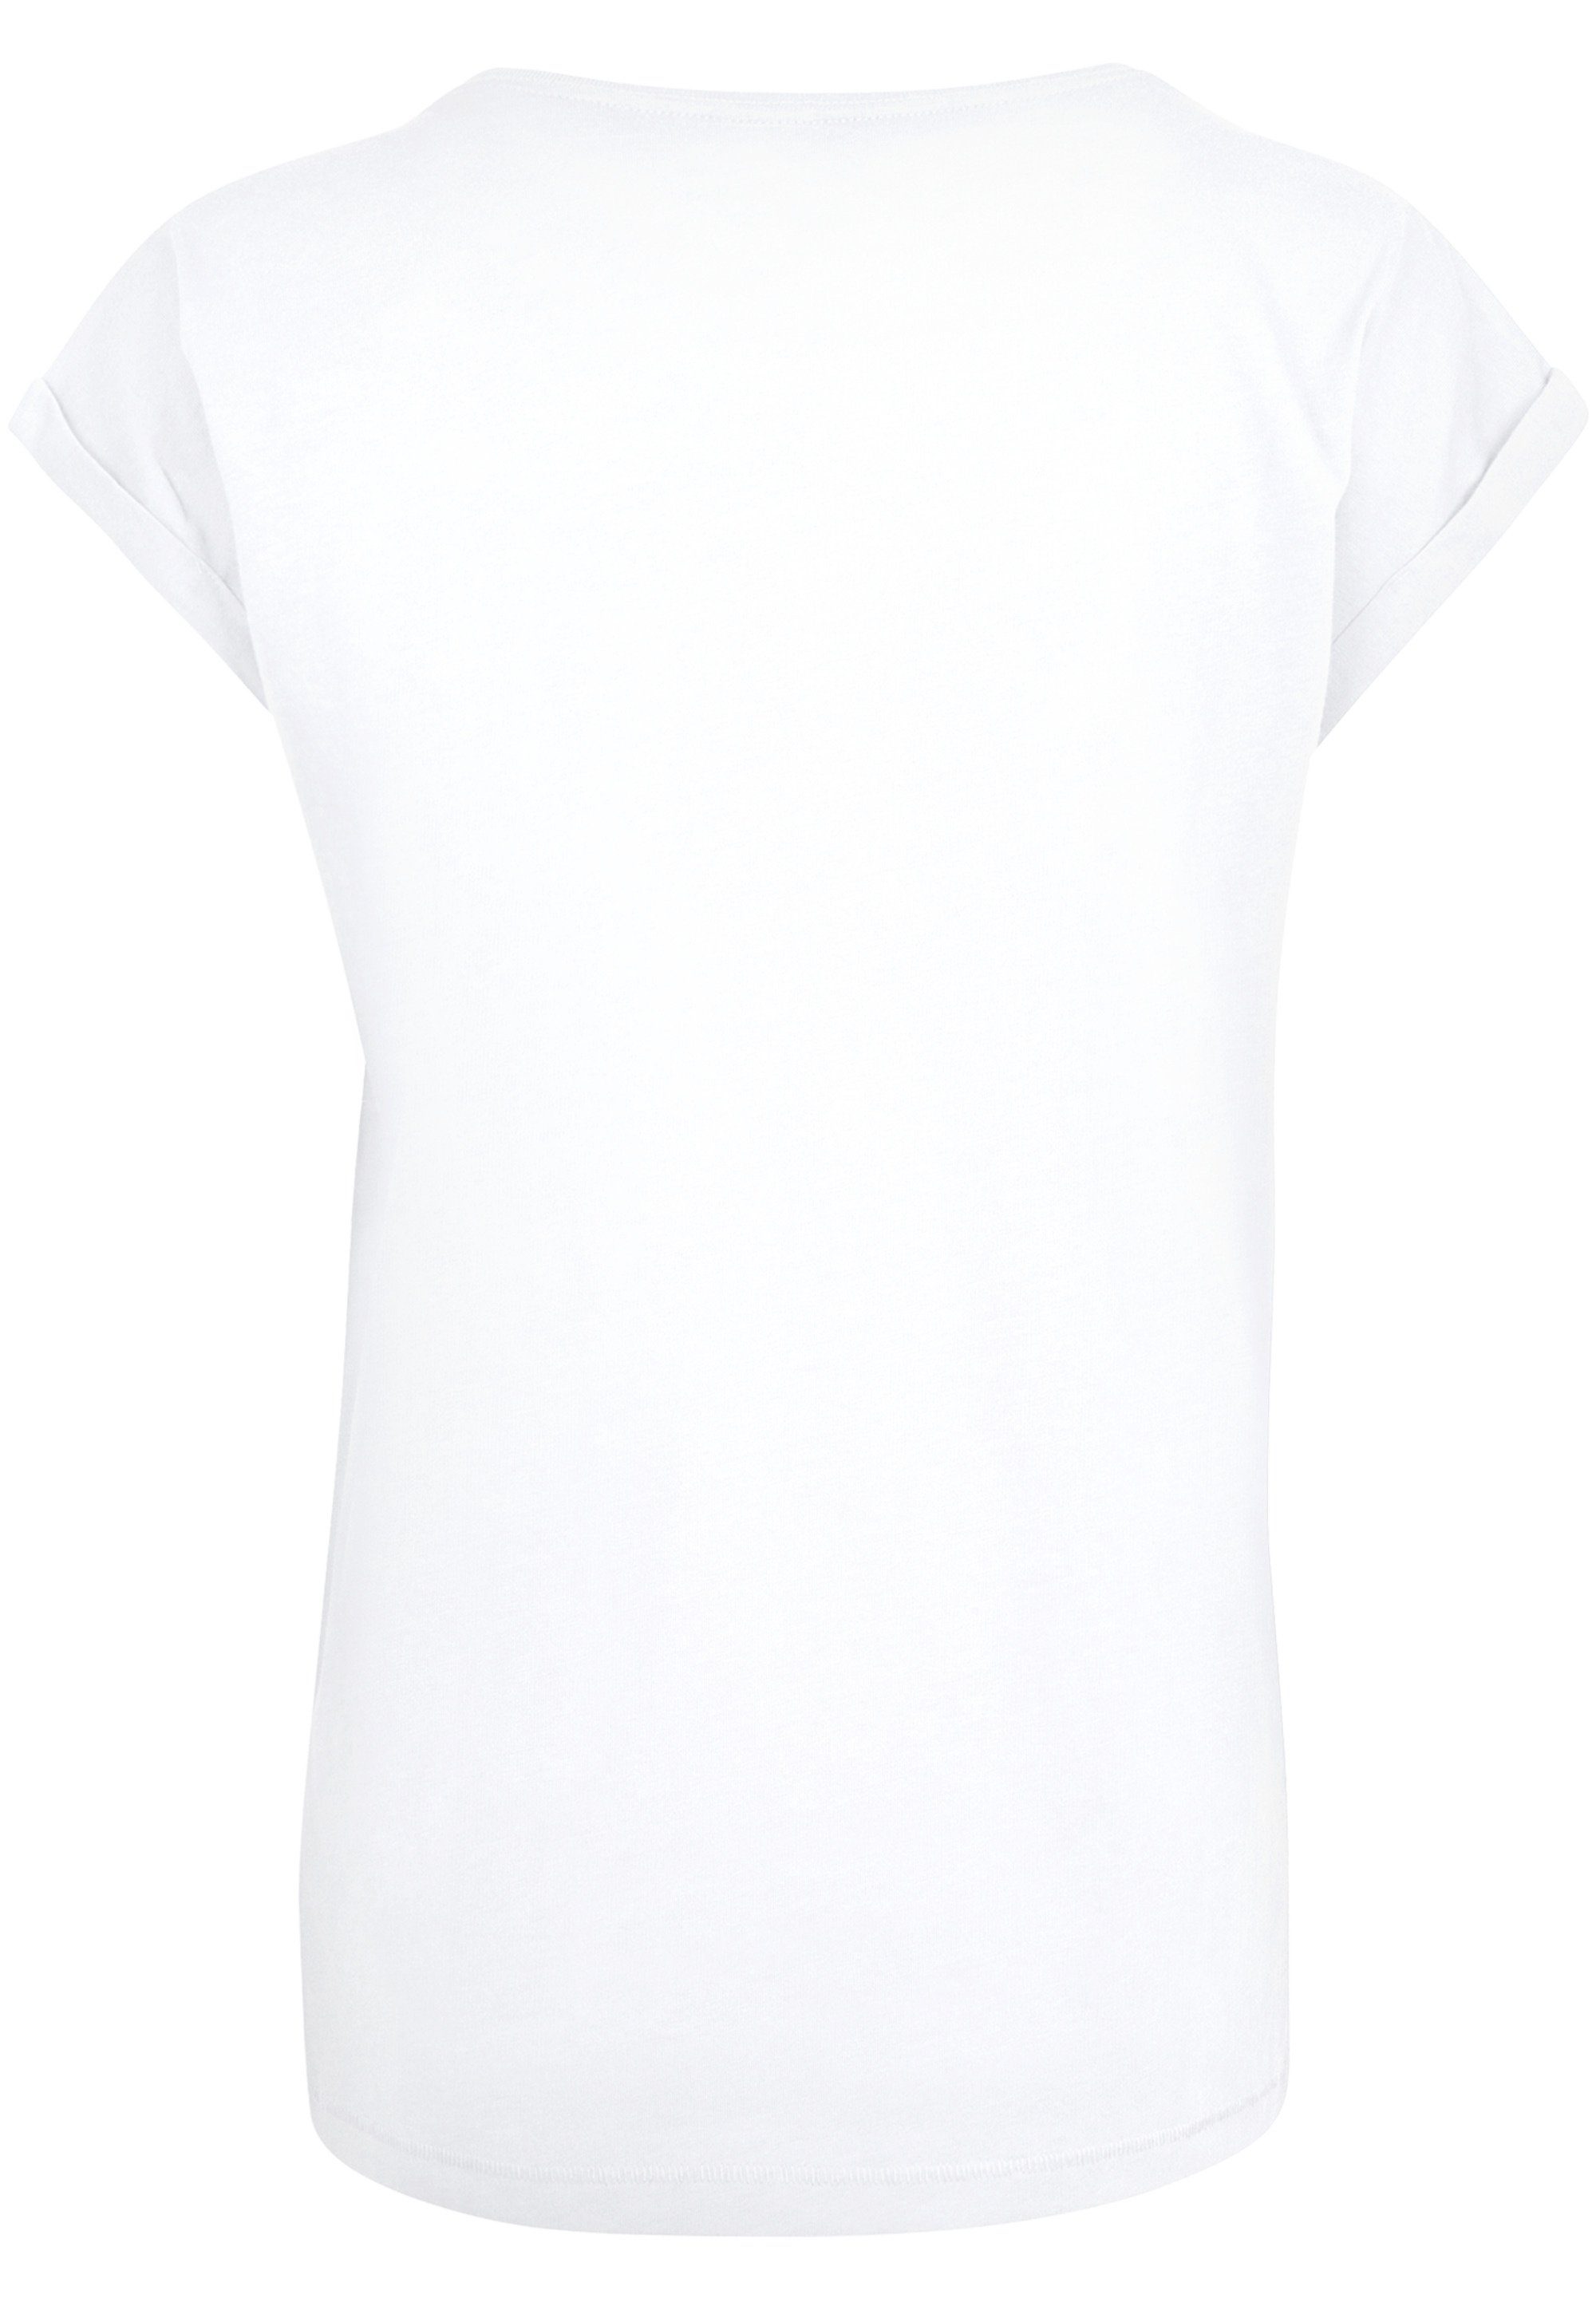 Print, die Sehr Arielle Baumwollstoff Disney hohem Tragekomfort T-Shirt F4NT4STIC mit weicher Meerjungfrau